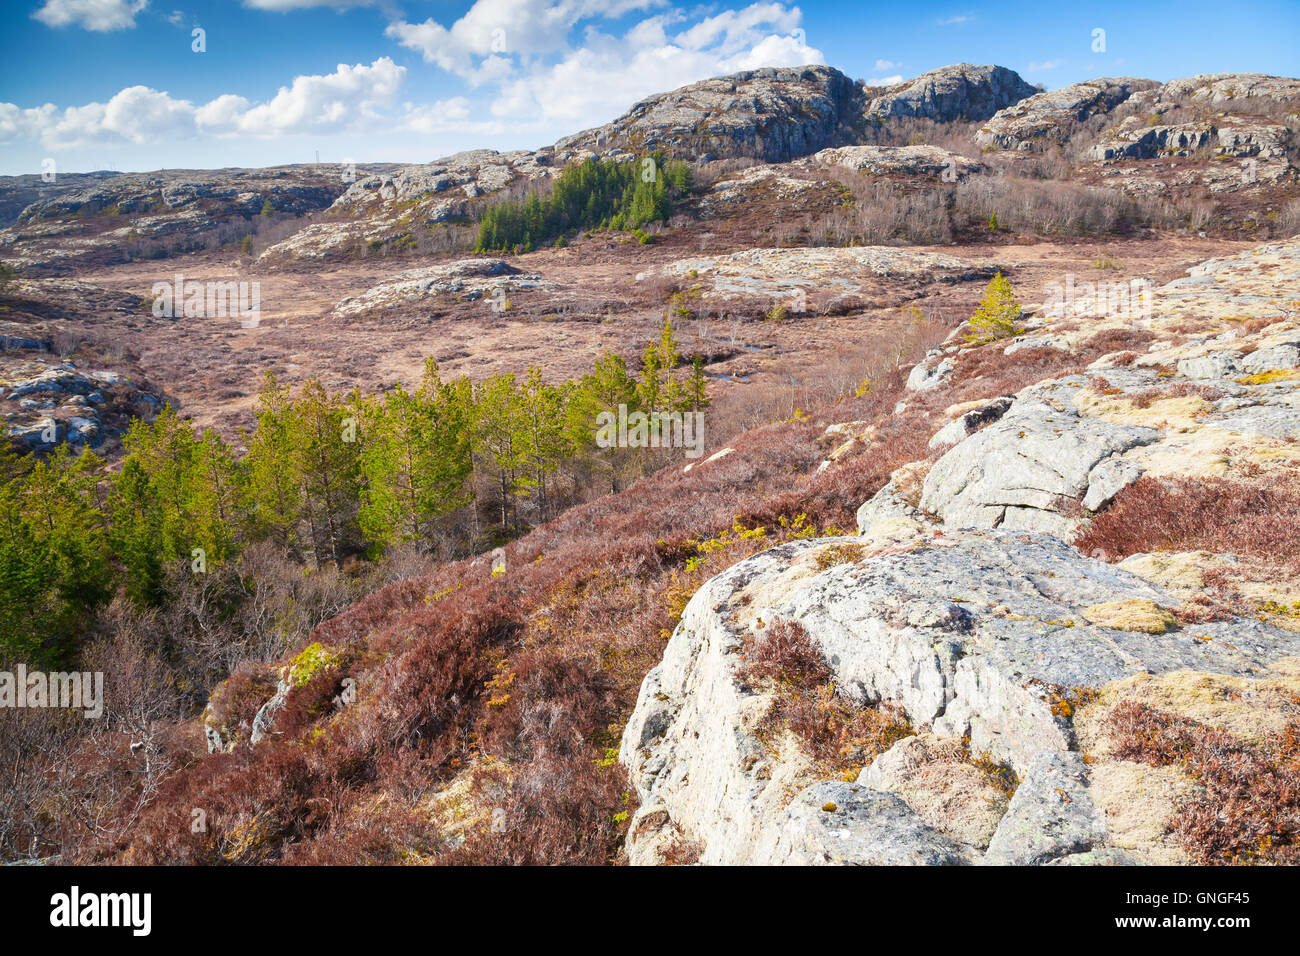 Le nord de la Norvège au printemps. Paysage de montagne avec des pins et sur les roches rouges de plus en plus de mousse Banque D'Images